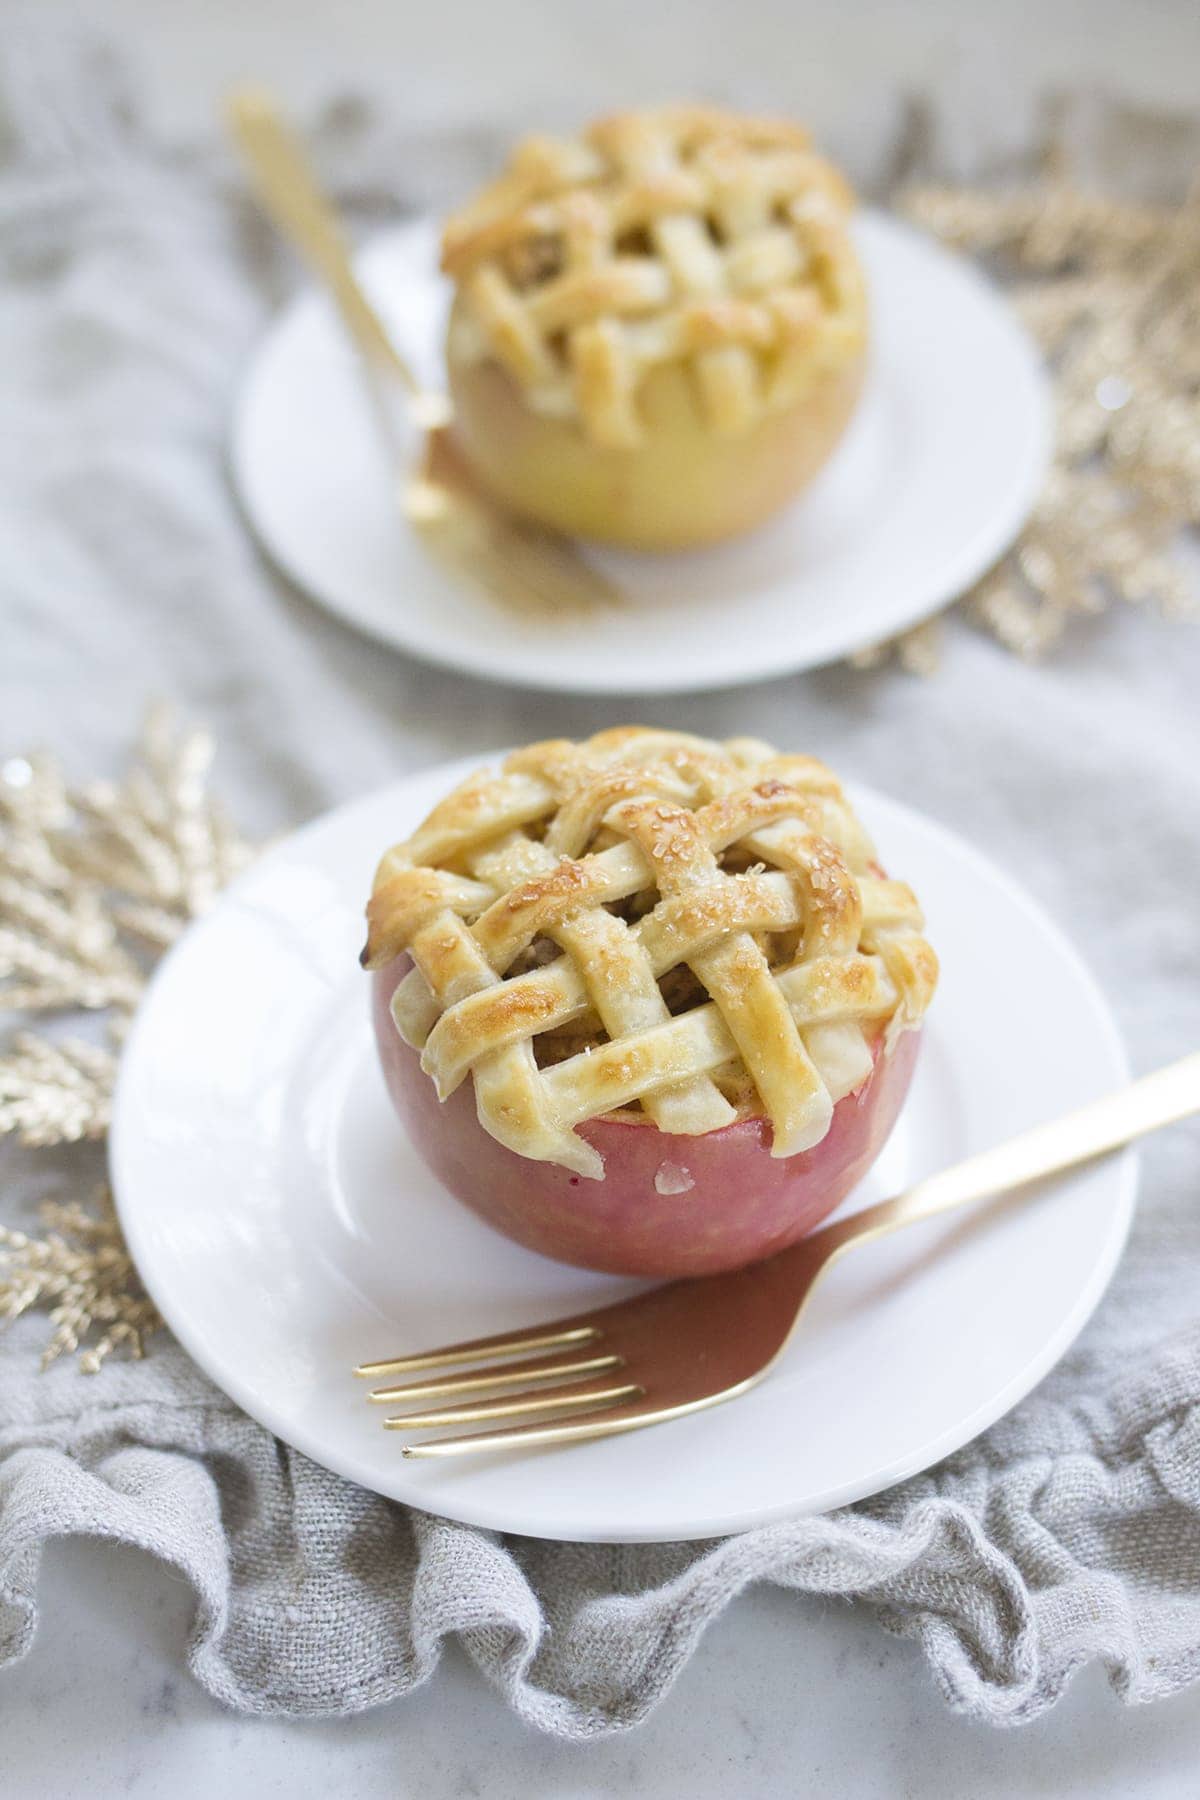 Apple Pie Baked in an Apple